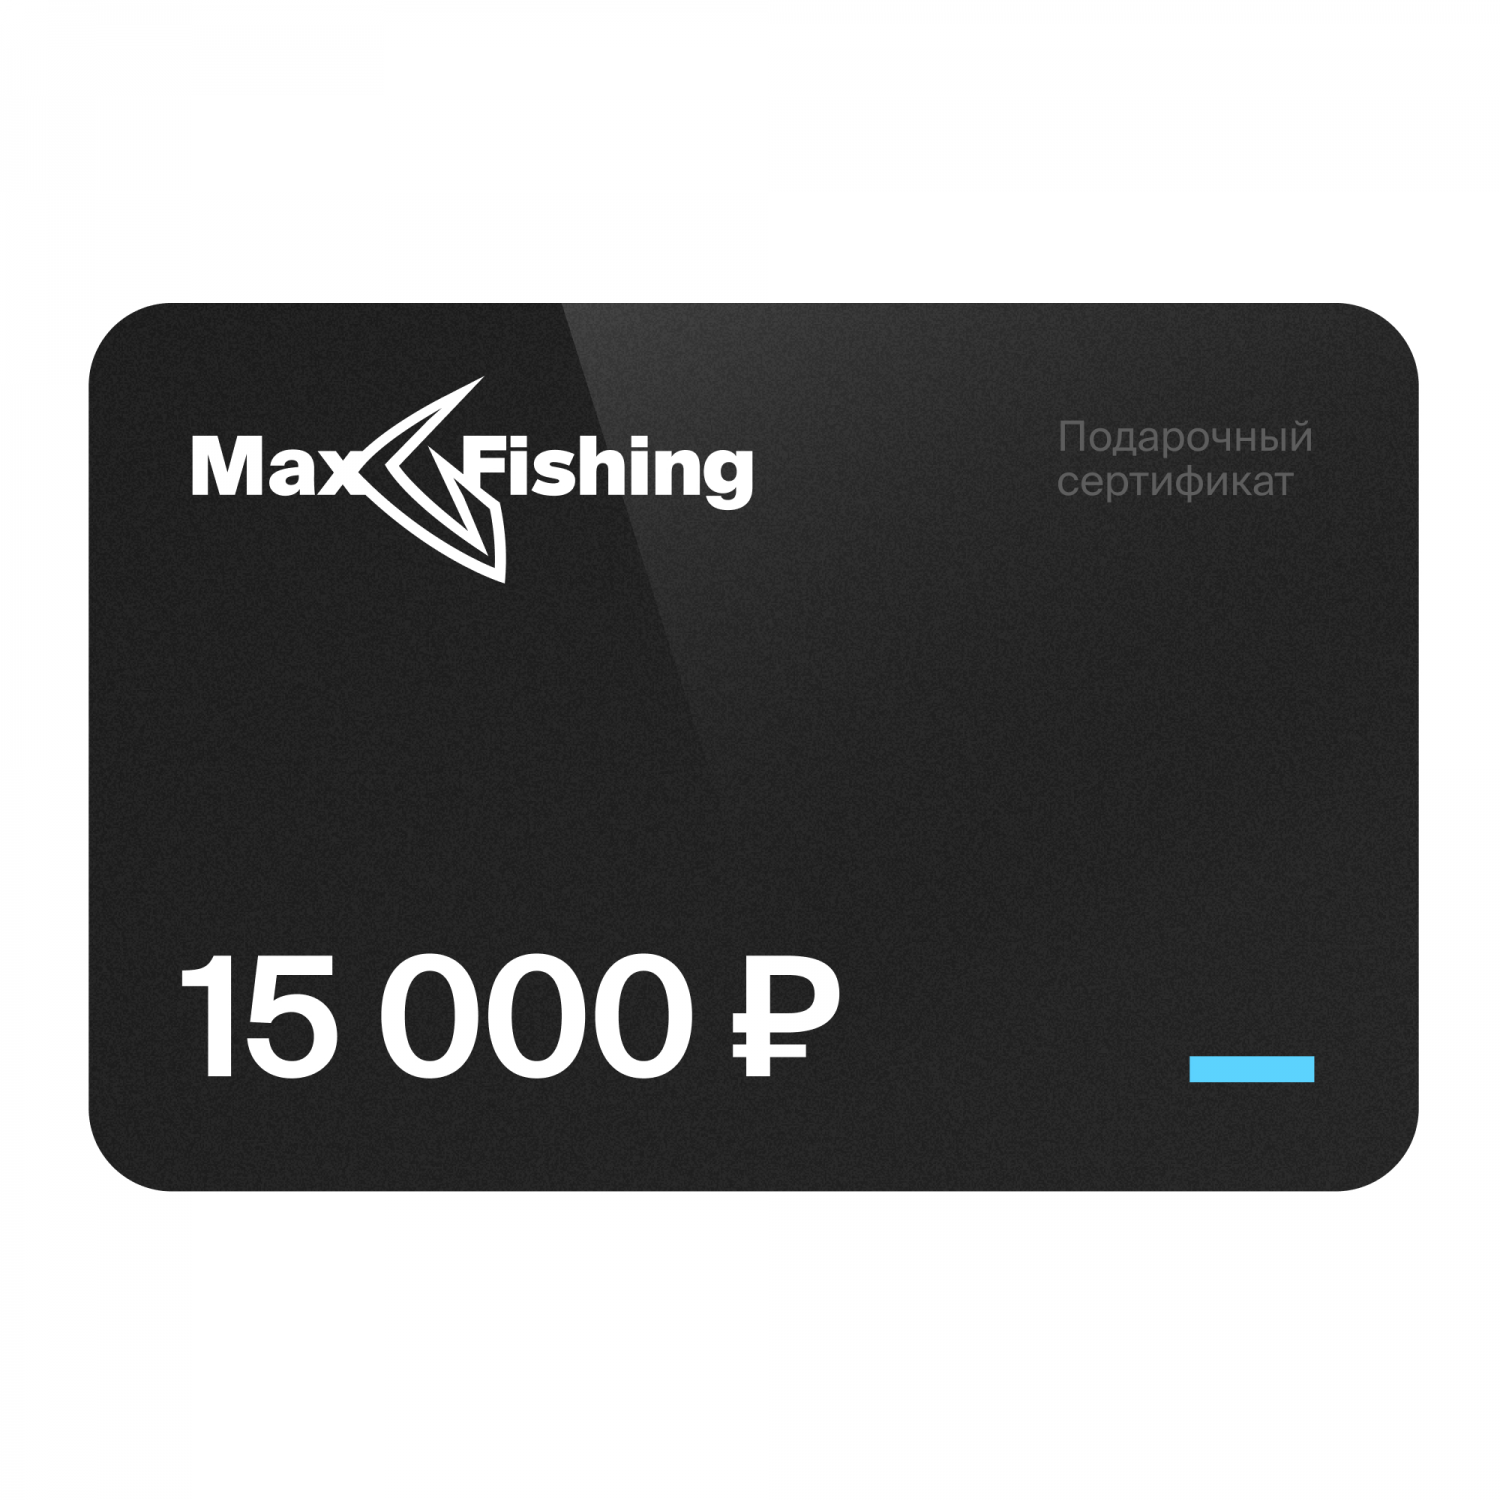 Подарочный сертификат MaxFishing 15 000 ₽ подарочный сертификат с новогодним дизайном 15 шт